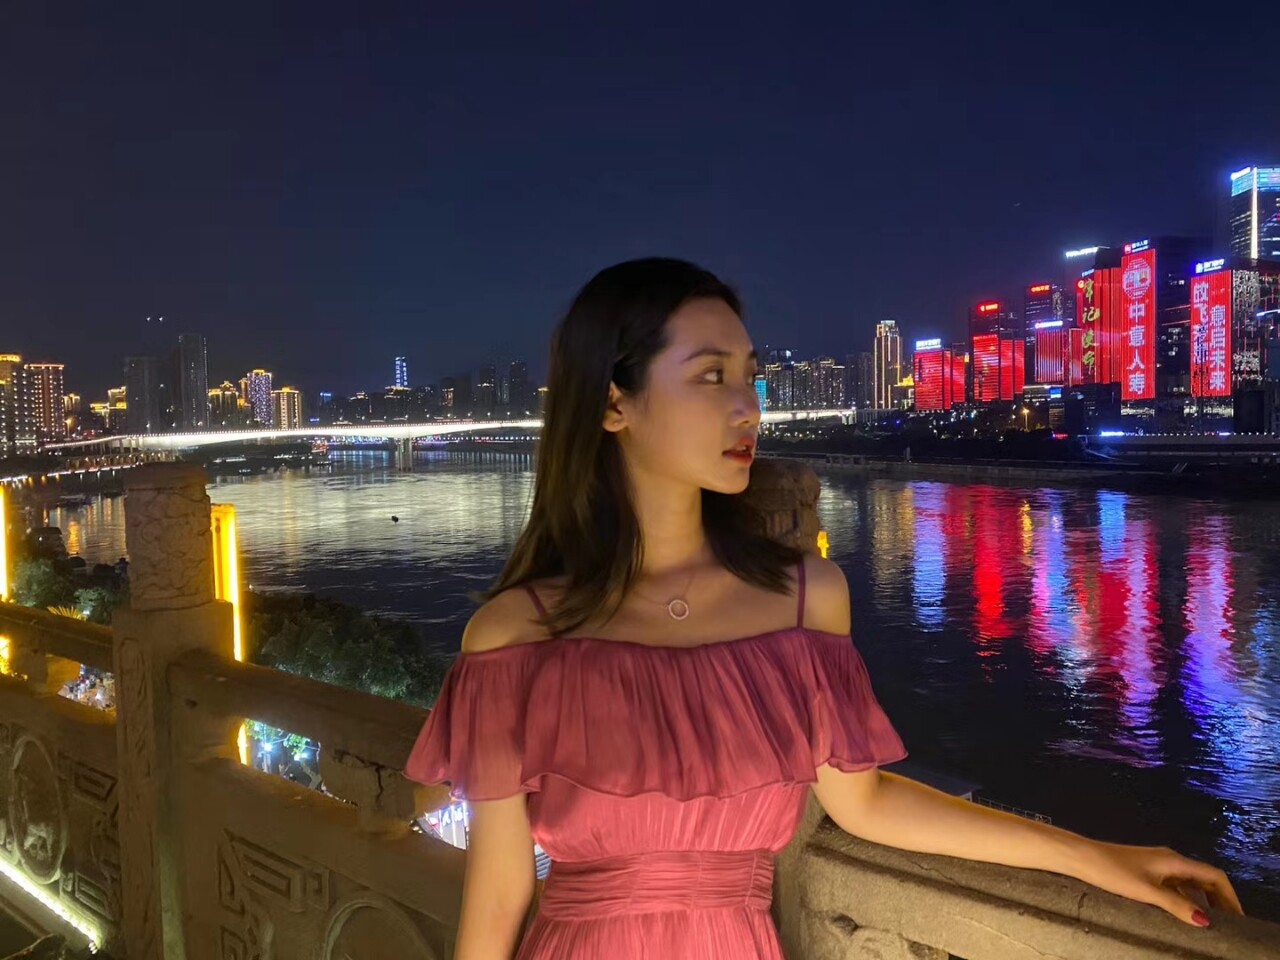 lijiajing find bride video